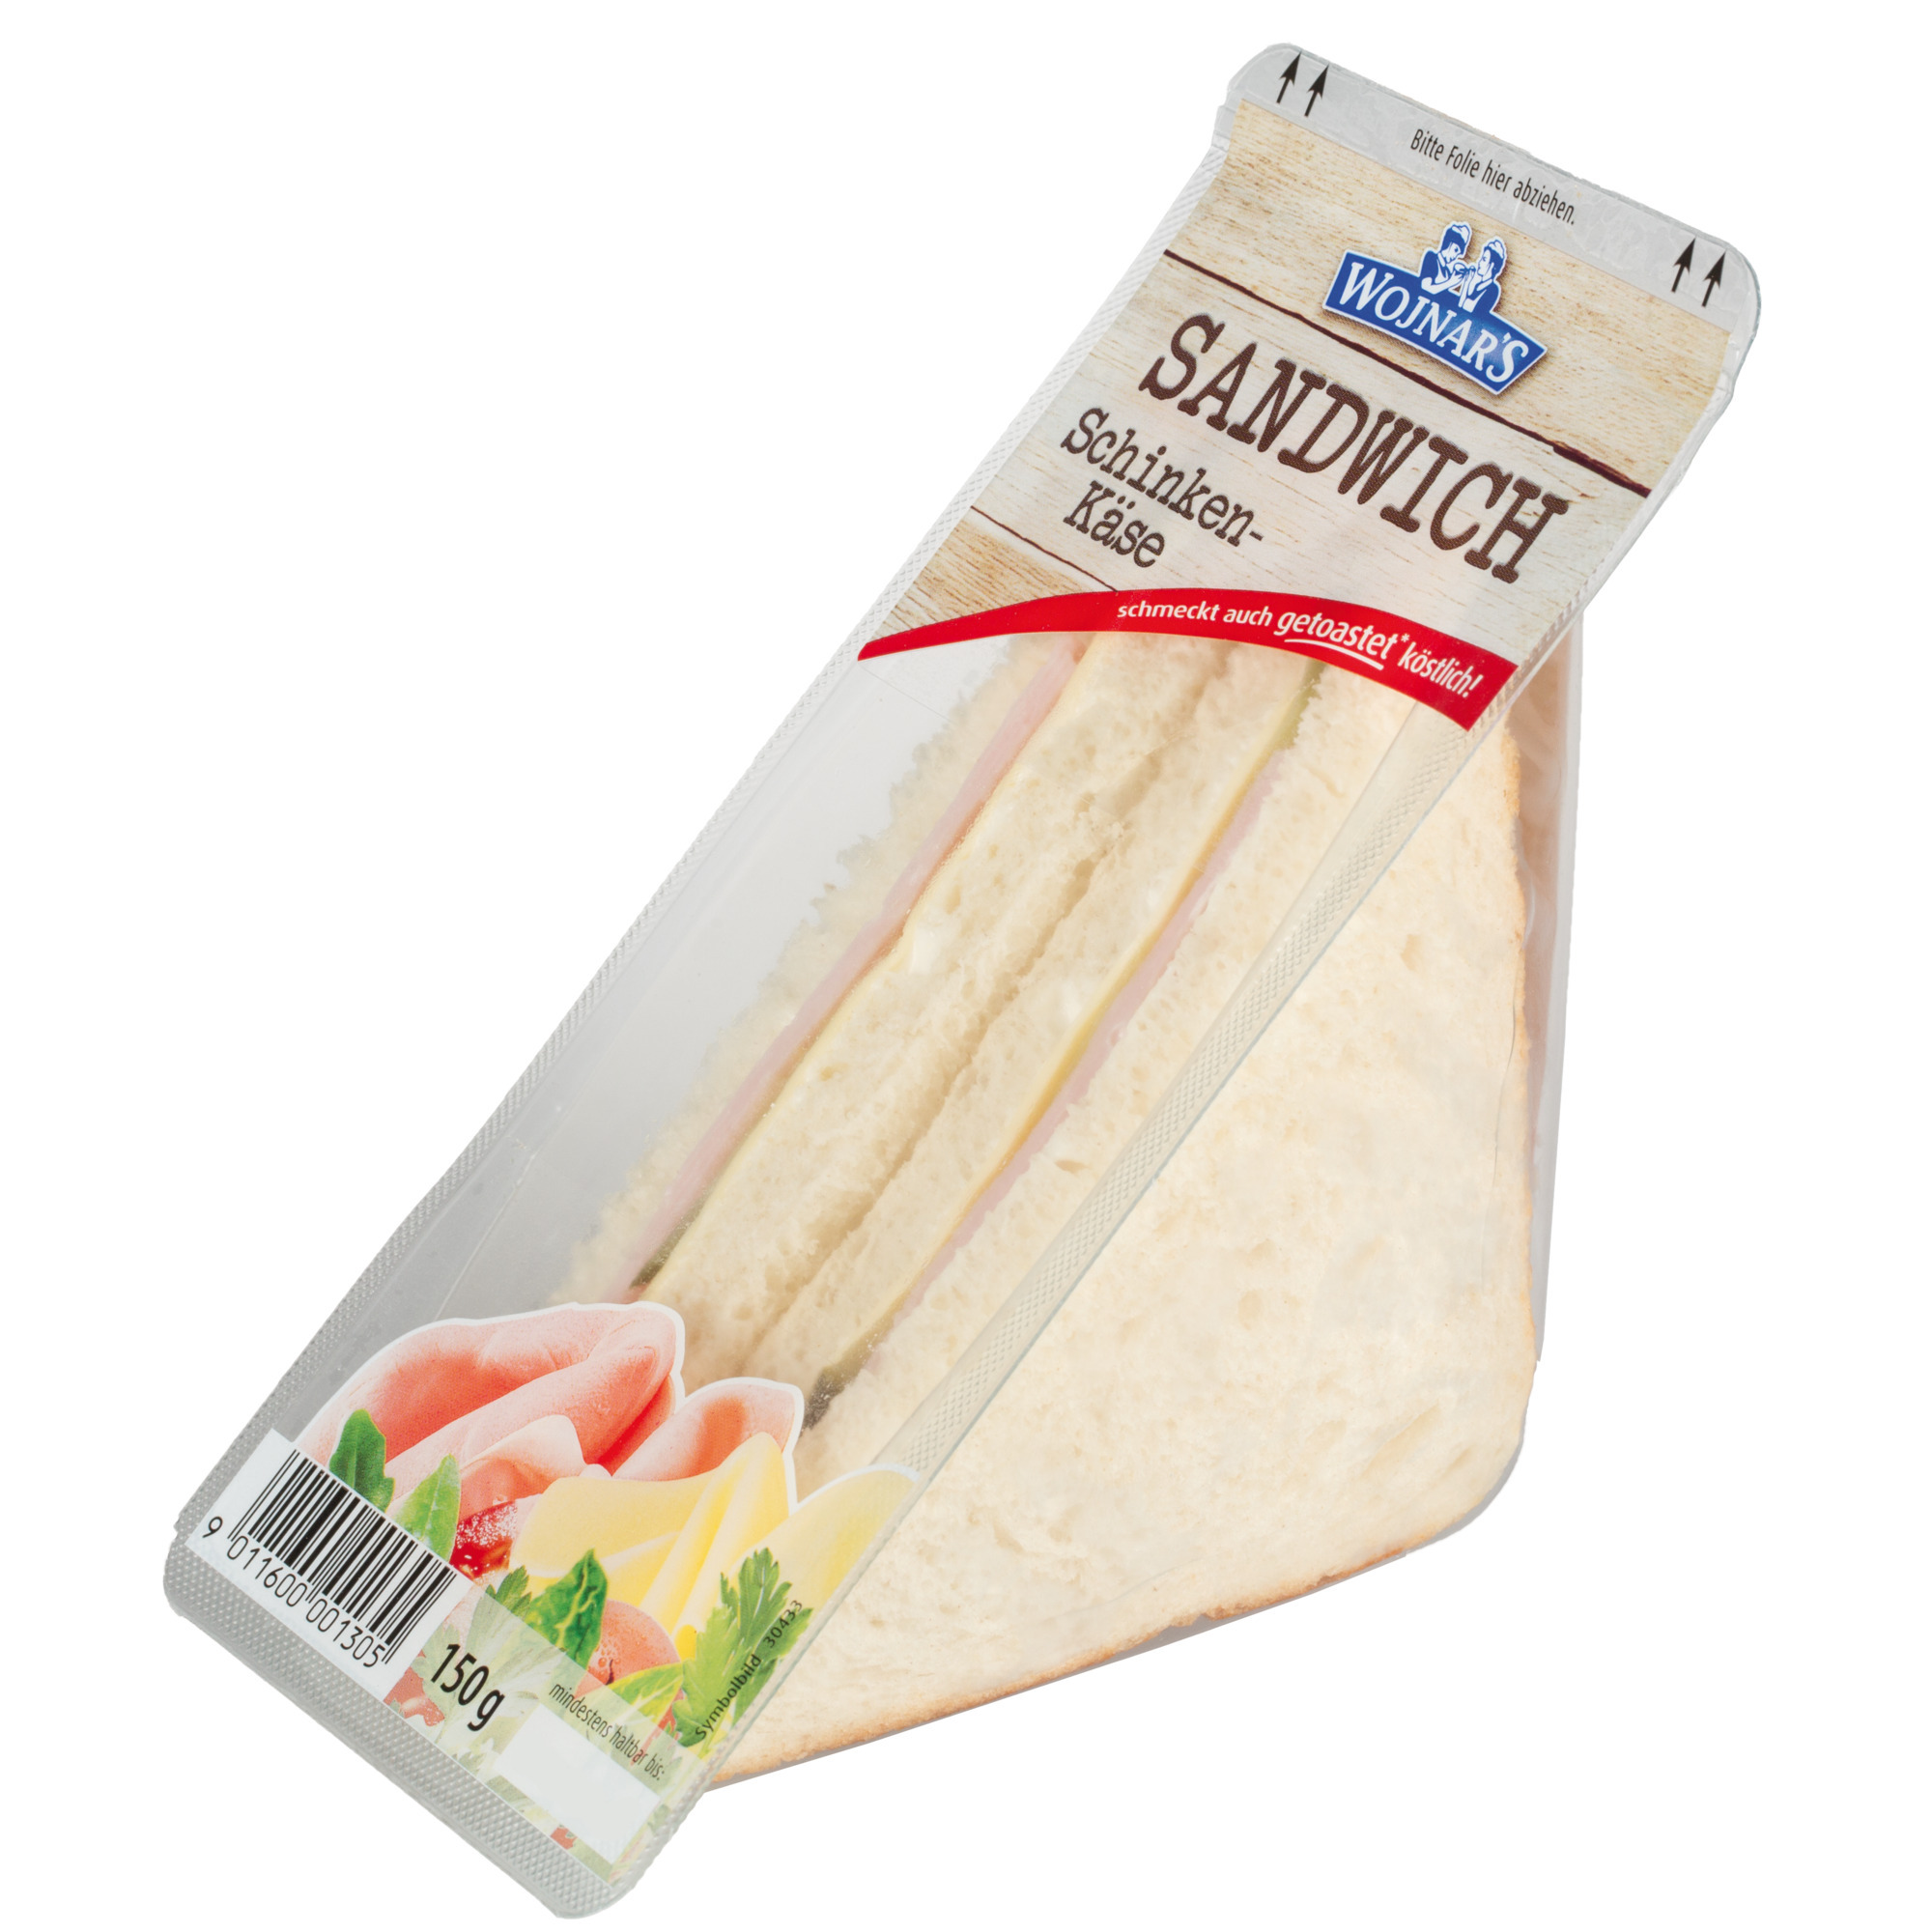 Wojnar's Sandwich 150g, Schinken/Käse